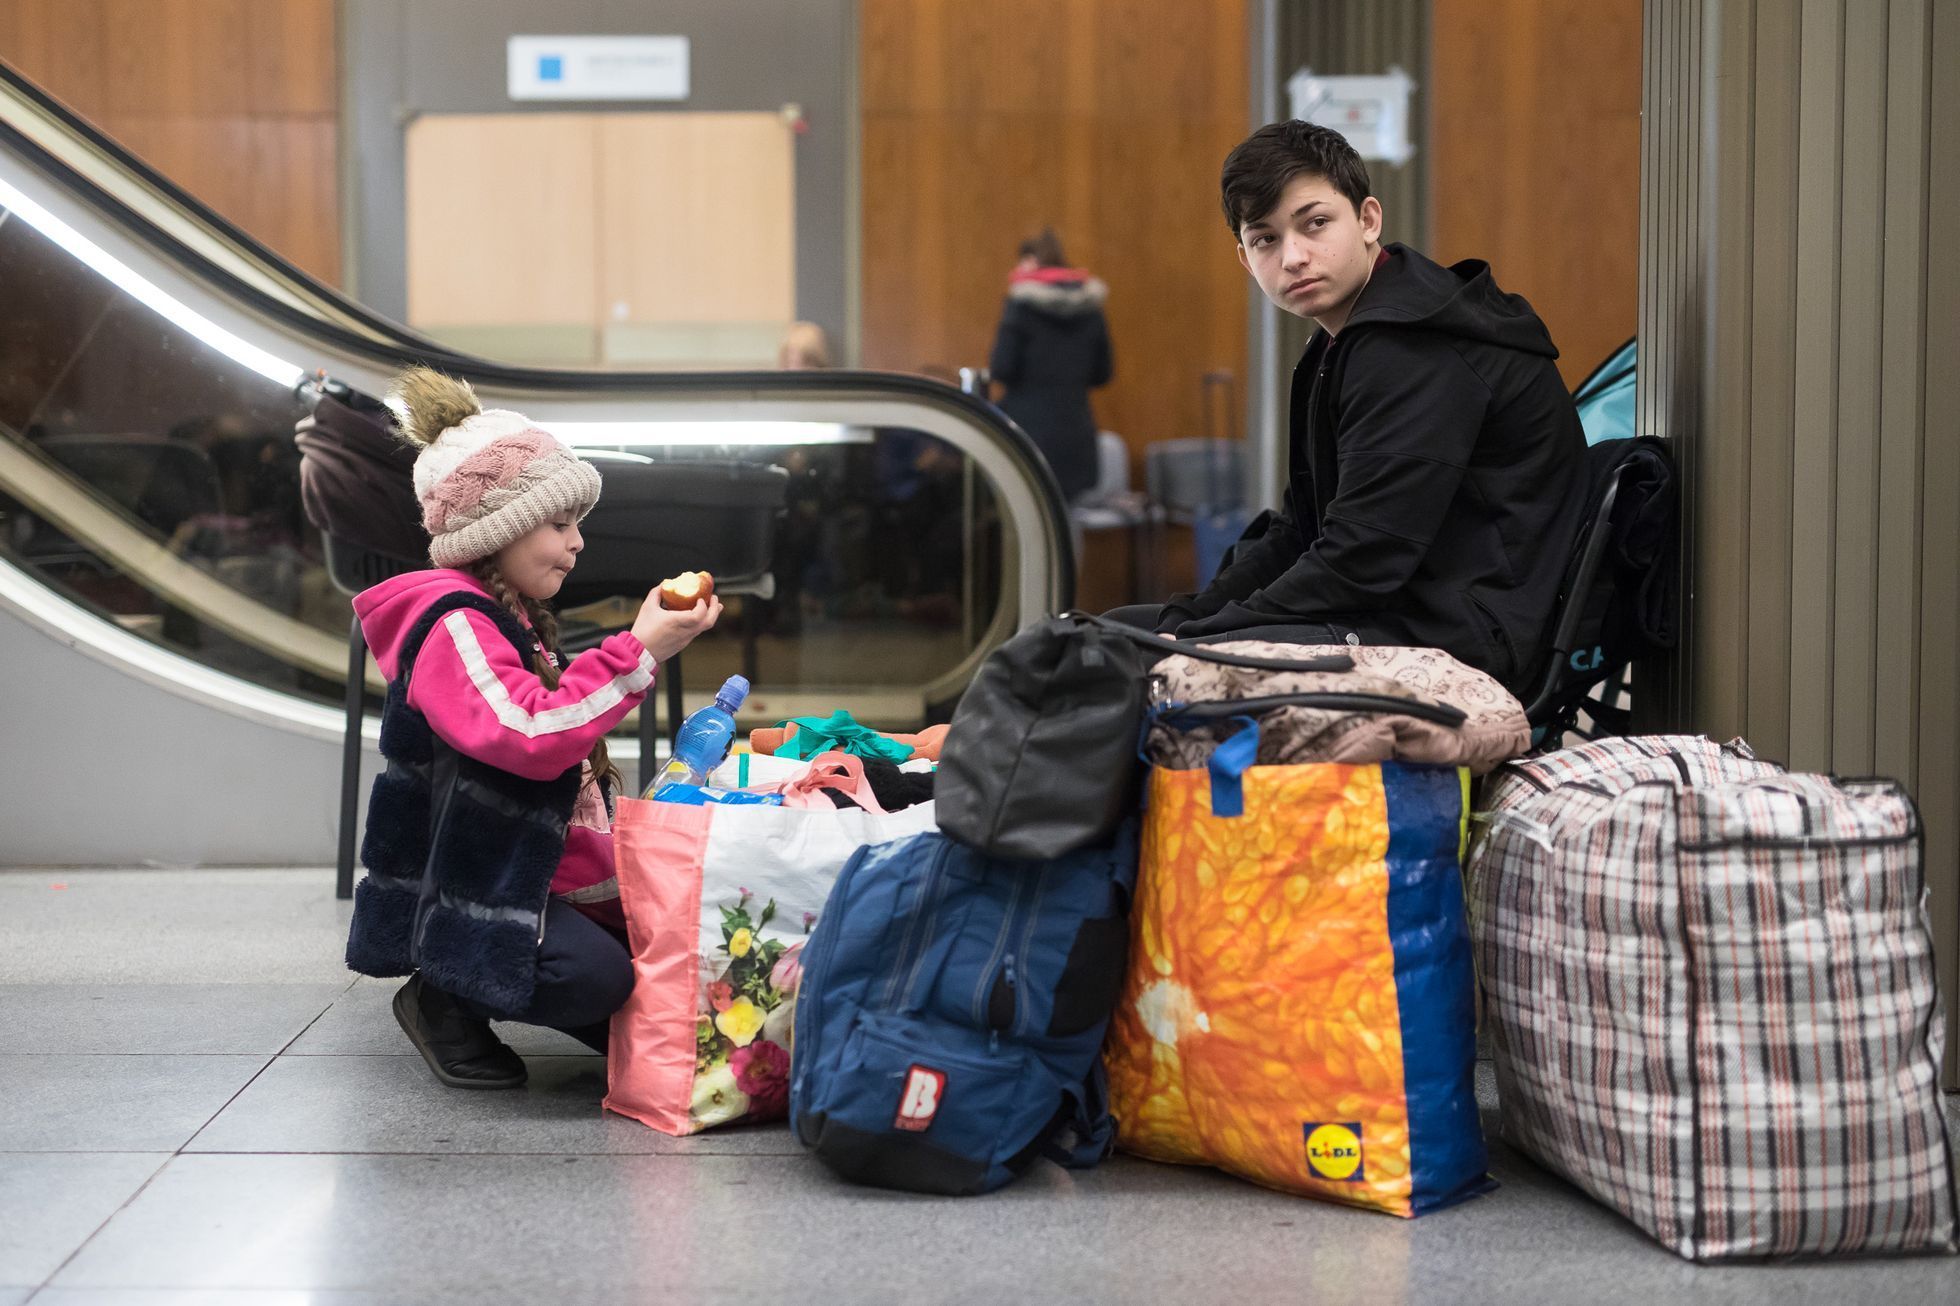 Ukrajinští uprchlíci v Kongresové centrum v Praze - uprchlické centrum